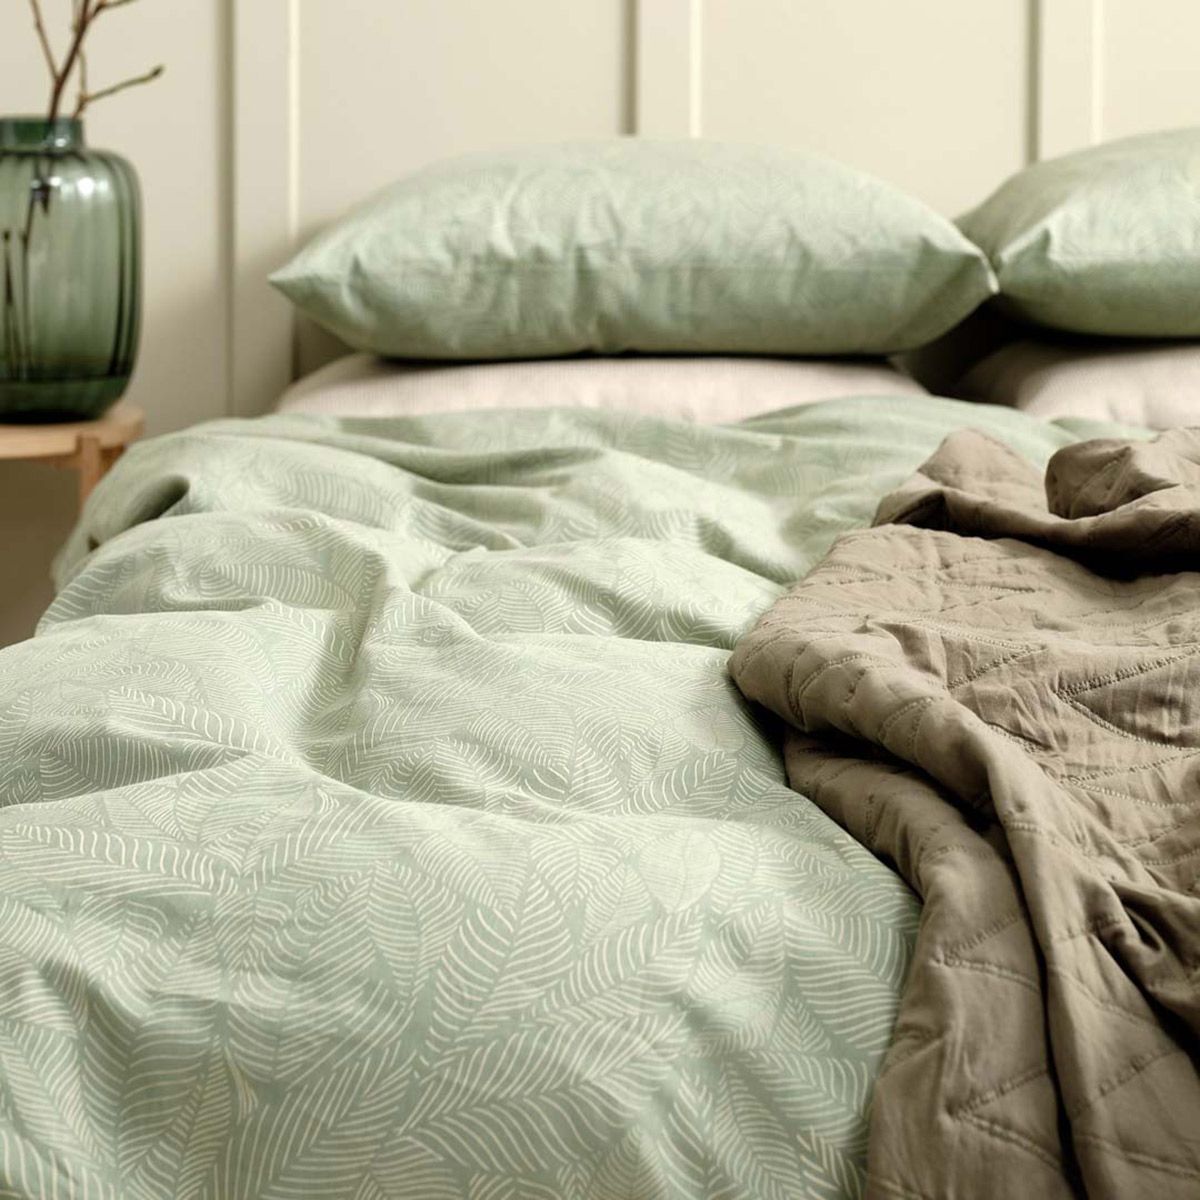 Almohadas grandes o pequeñas: el tamaño importa • Colchón Exprés